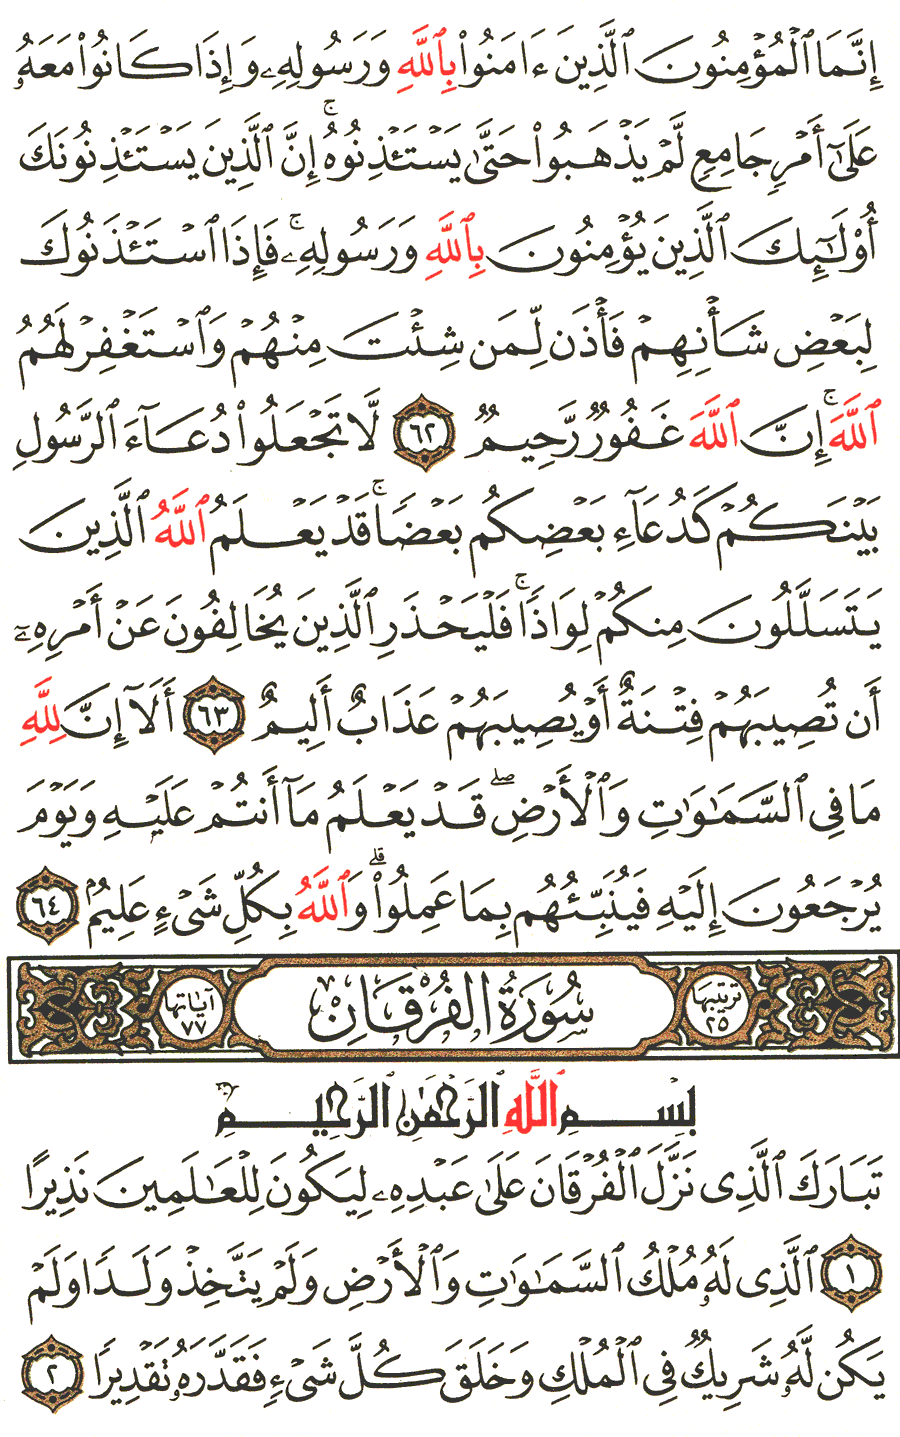 Furqan 63 al ayat Surah Al